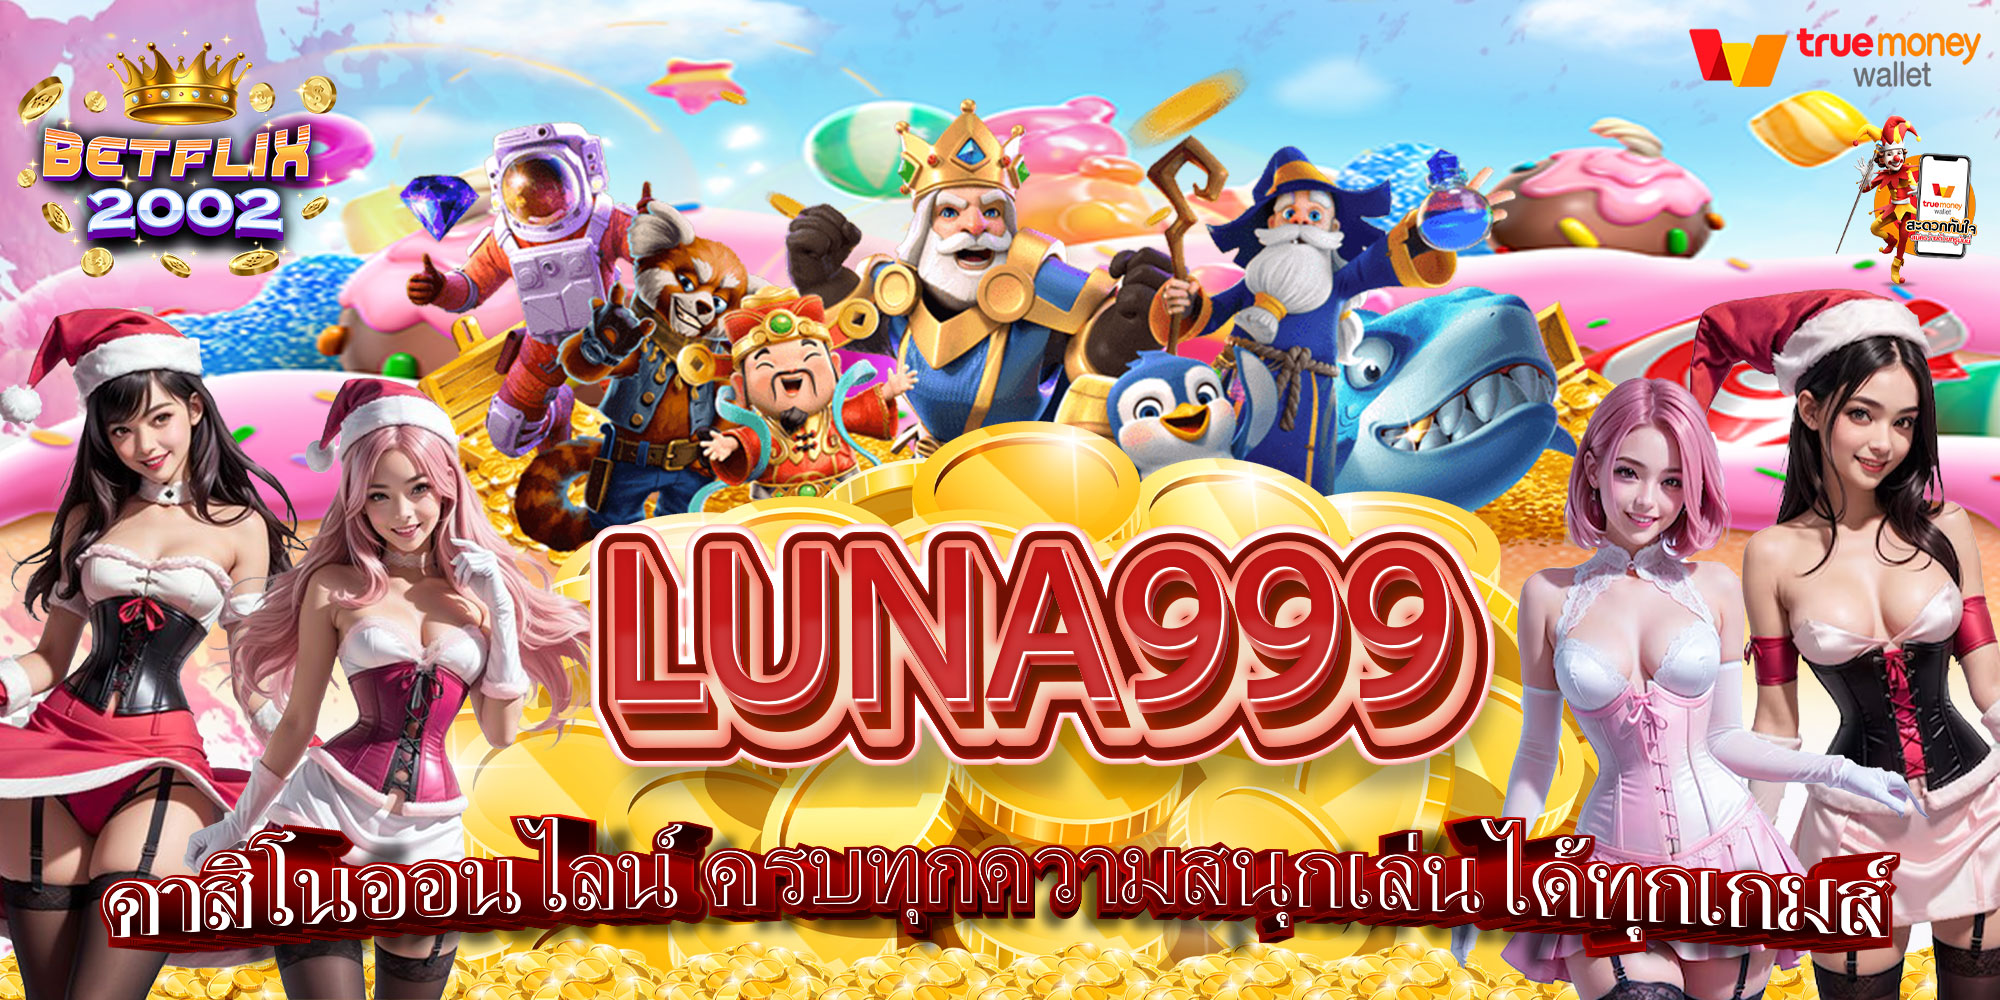 LUNA999-คาสิโนออนไลน์-ครบทุกความสนุกเล่นได้ทุกเกมส์